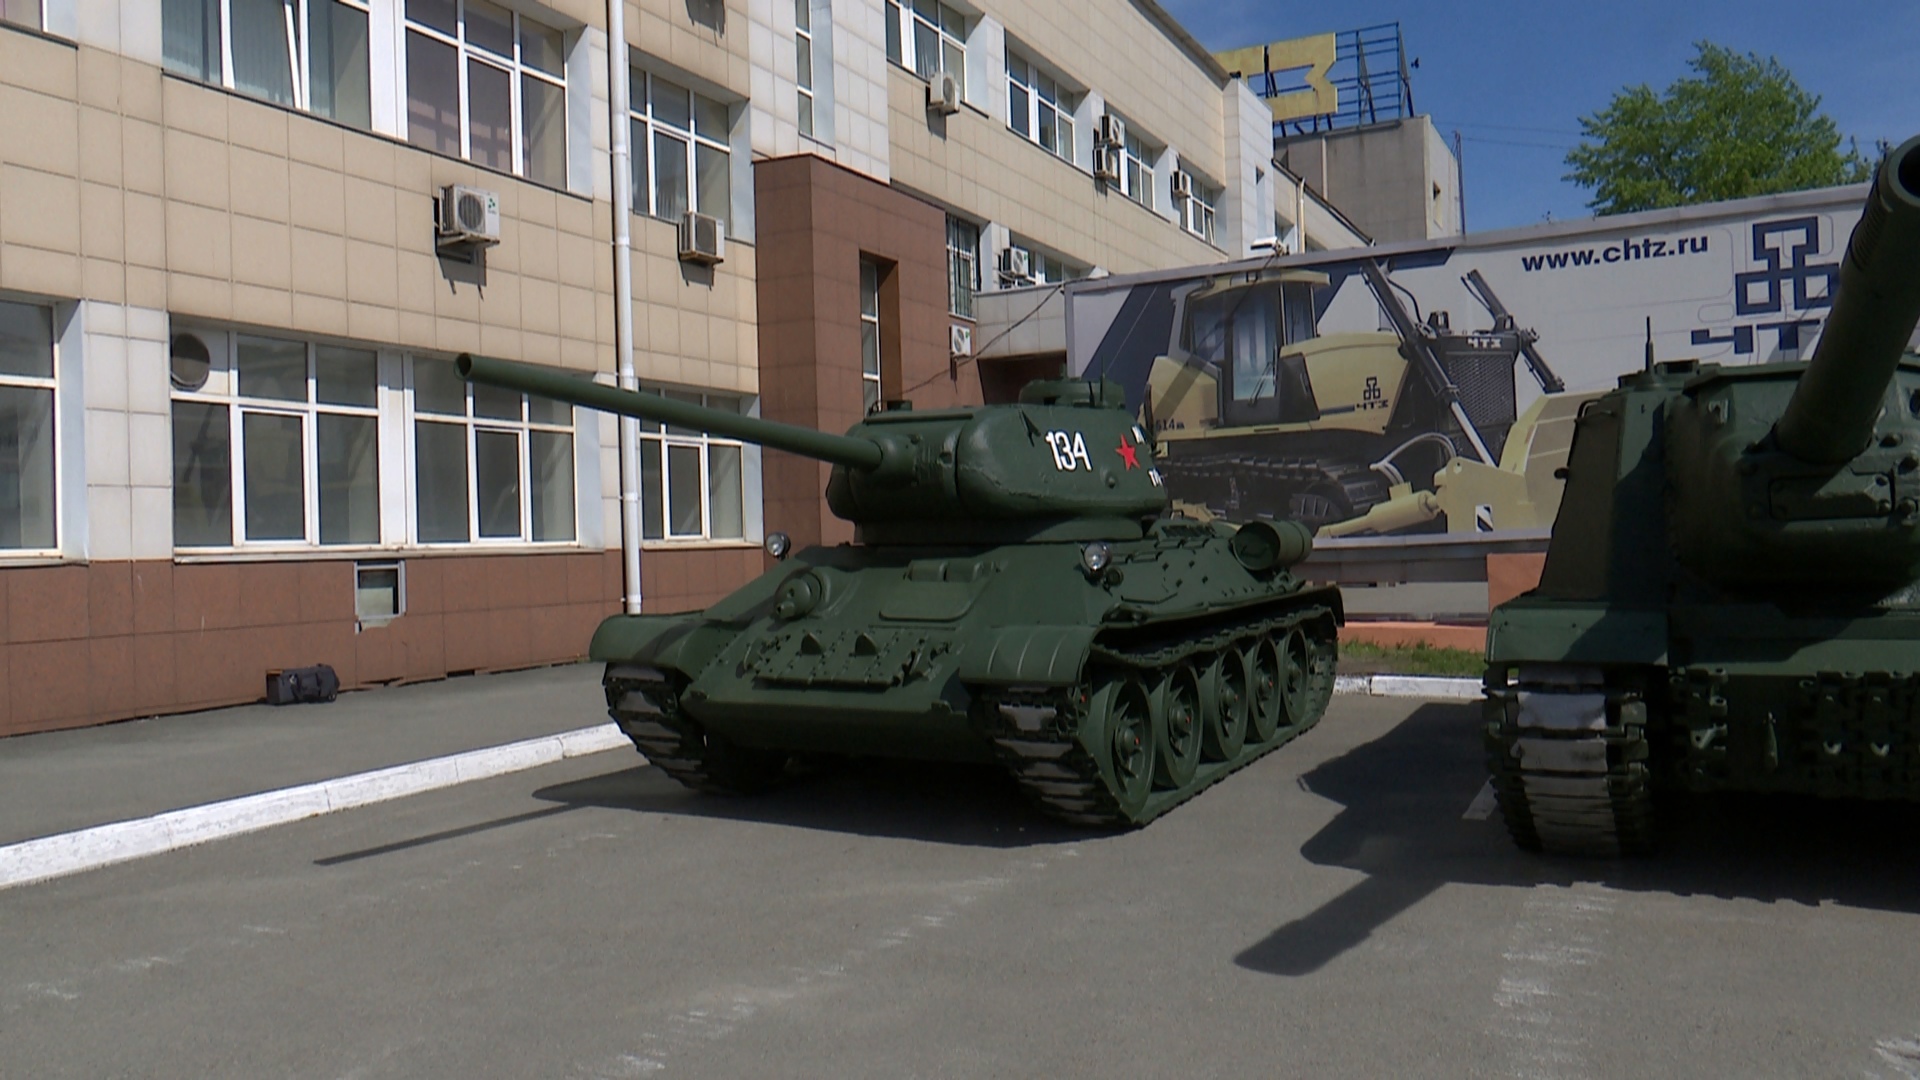 Легендарные танки: как готовят технику к параду Победы в Челябинске 